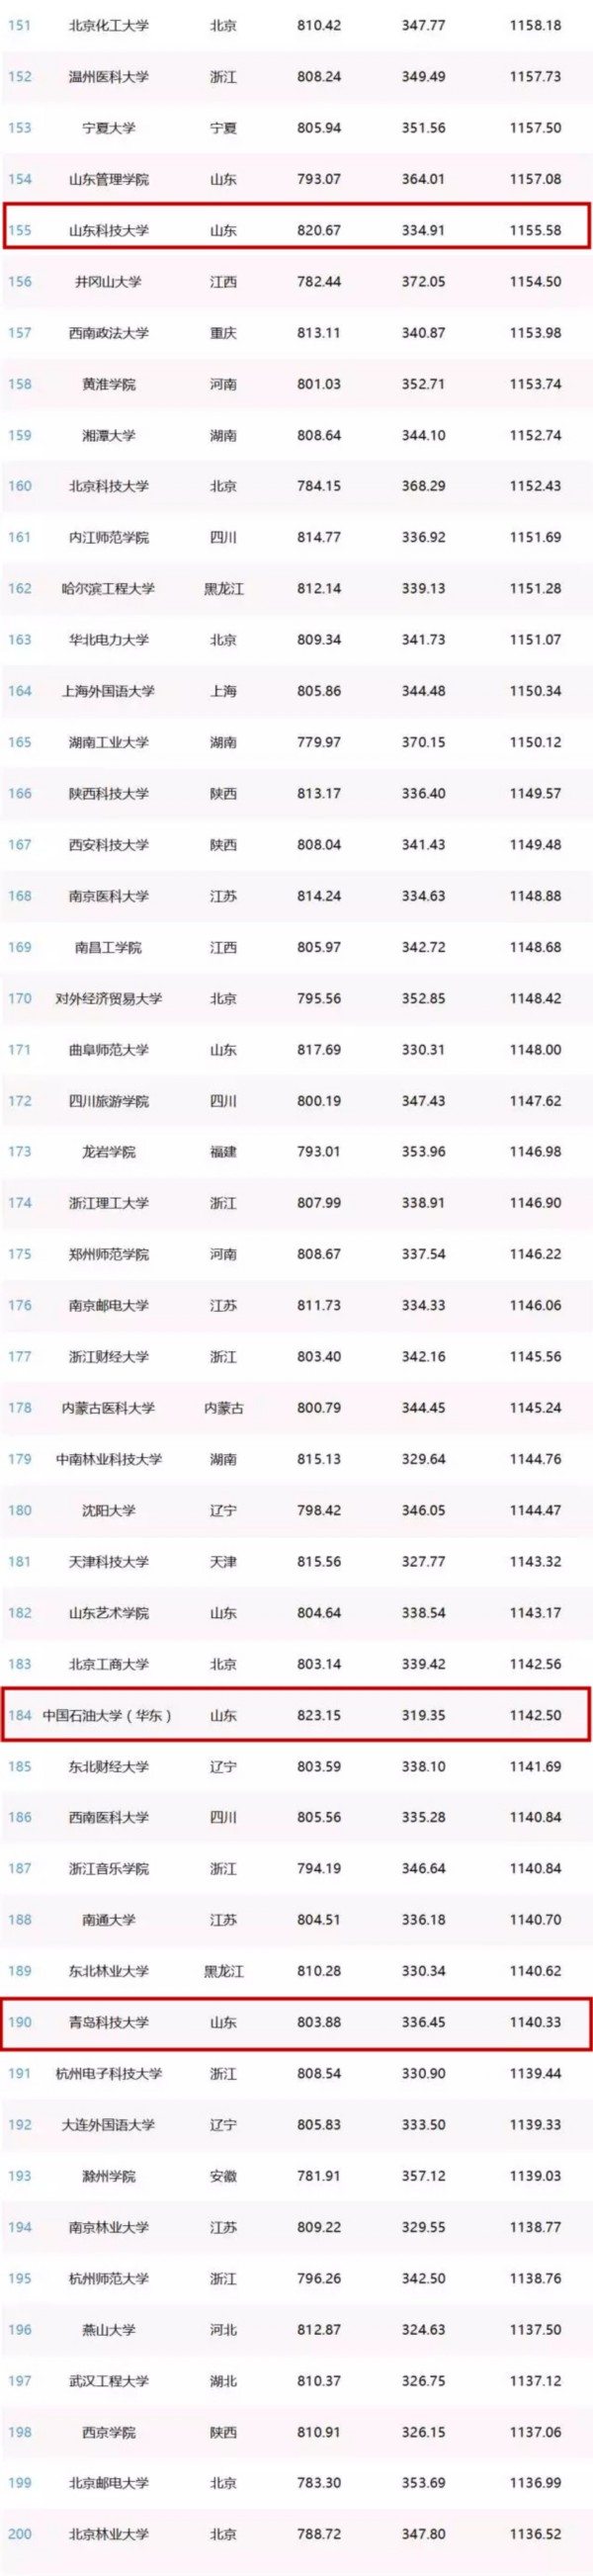 中國網紅高校排行榜發佈 青島五校上榜